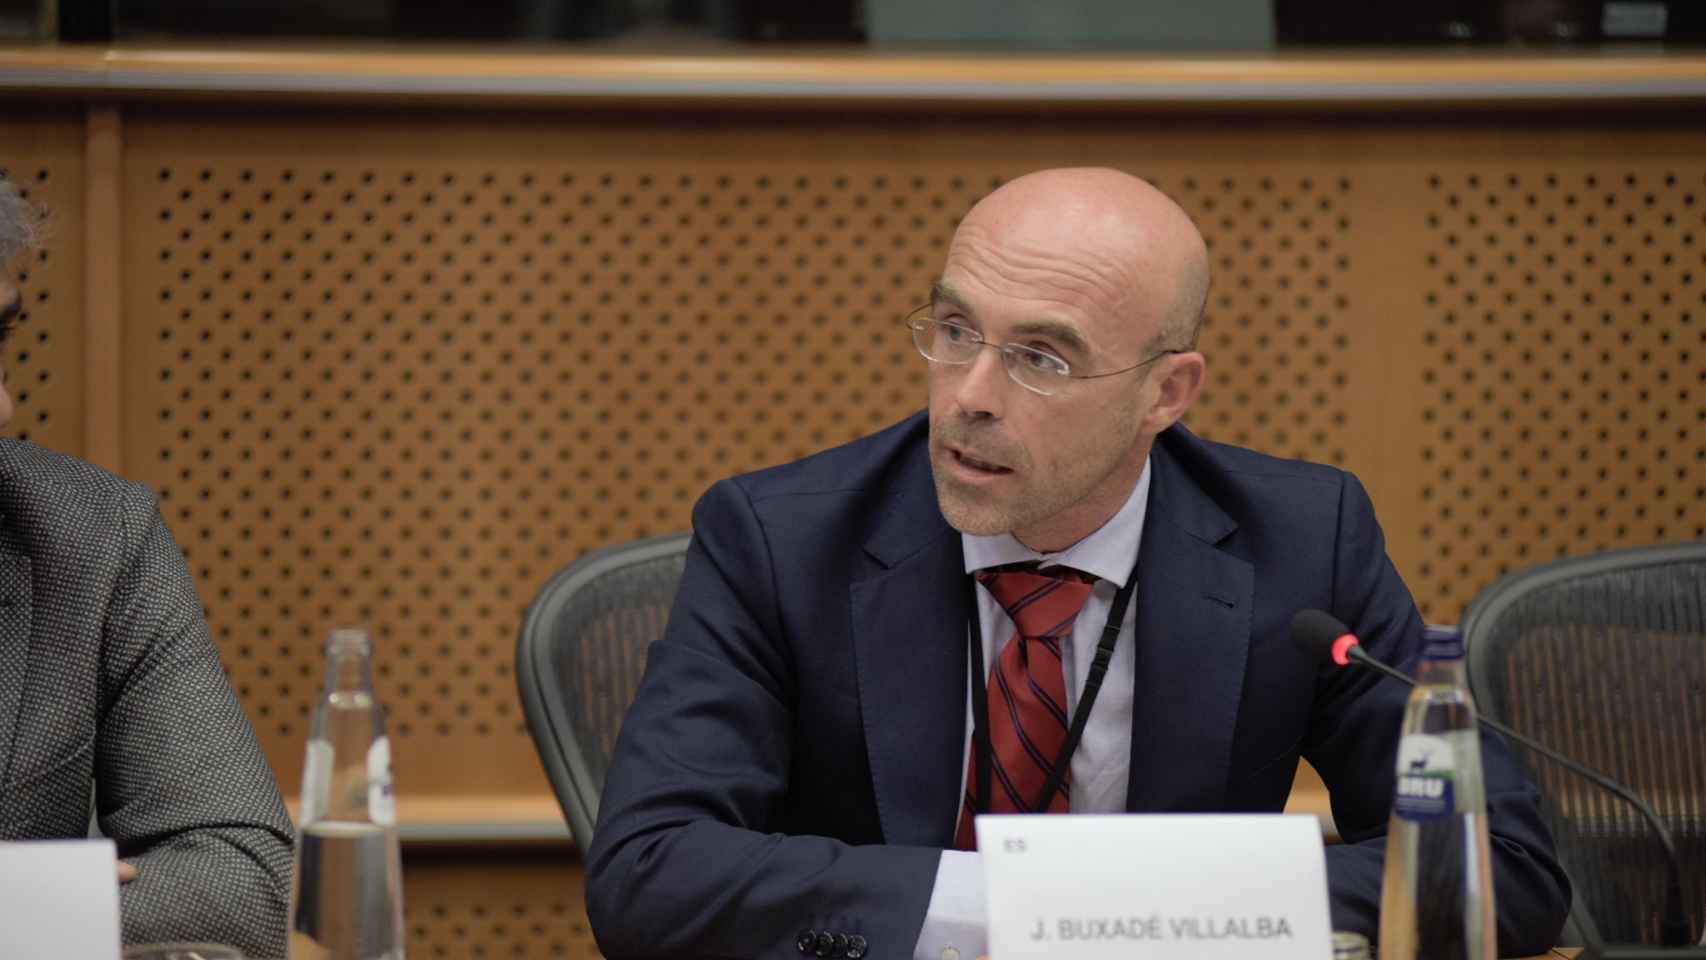 Jorge Buxadé, jefe de la delegación de Vox en el Parlamento Europeo.